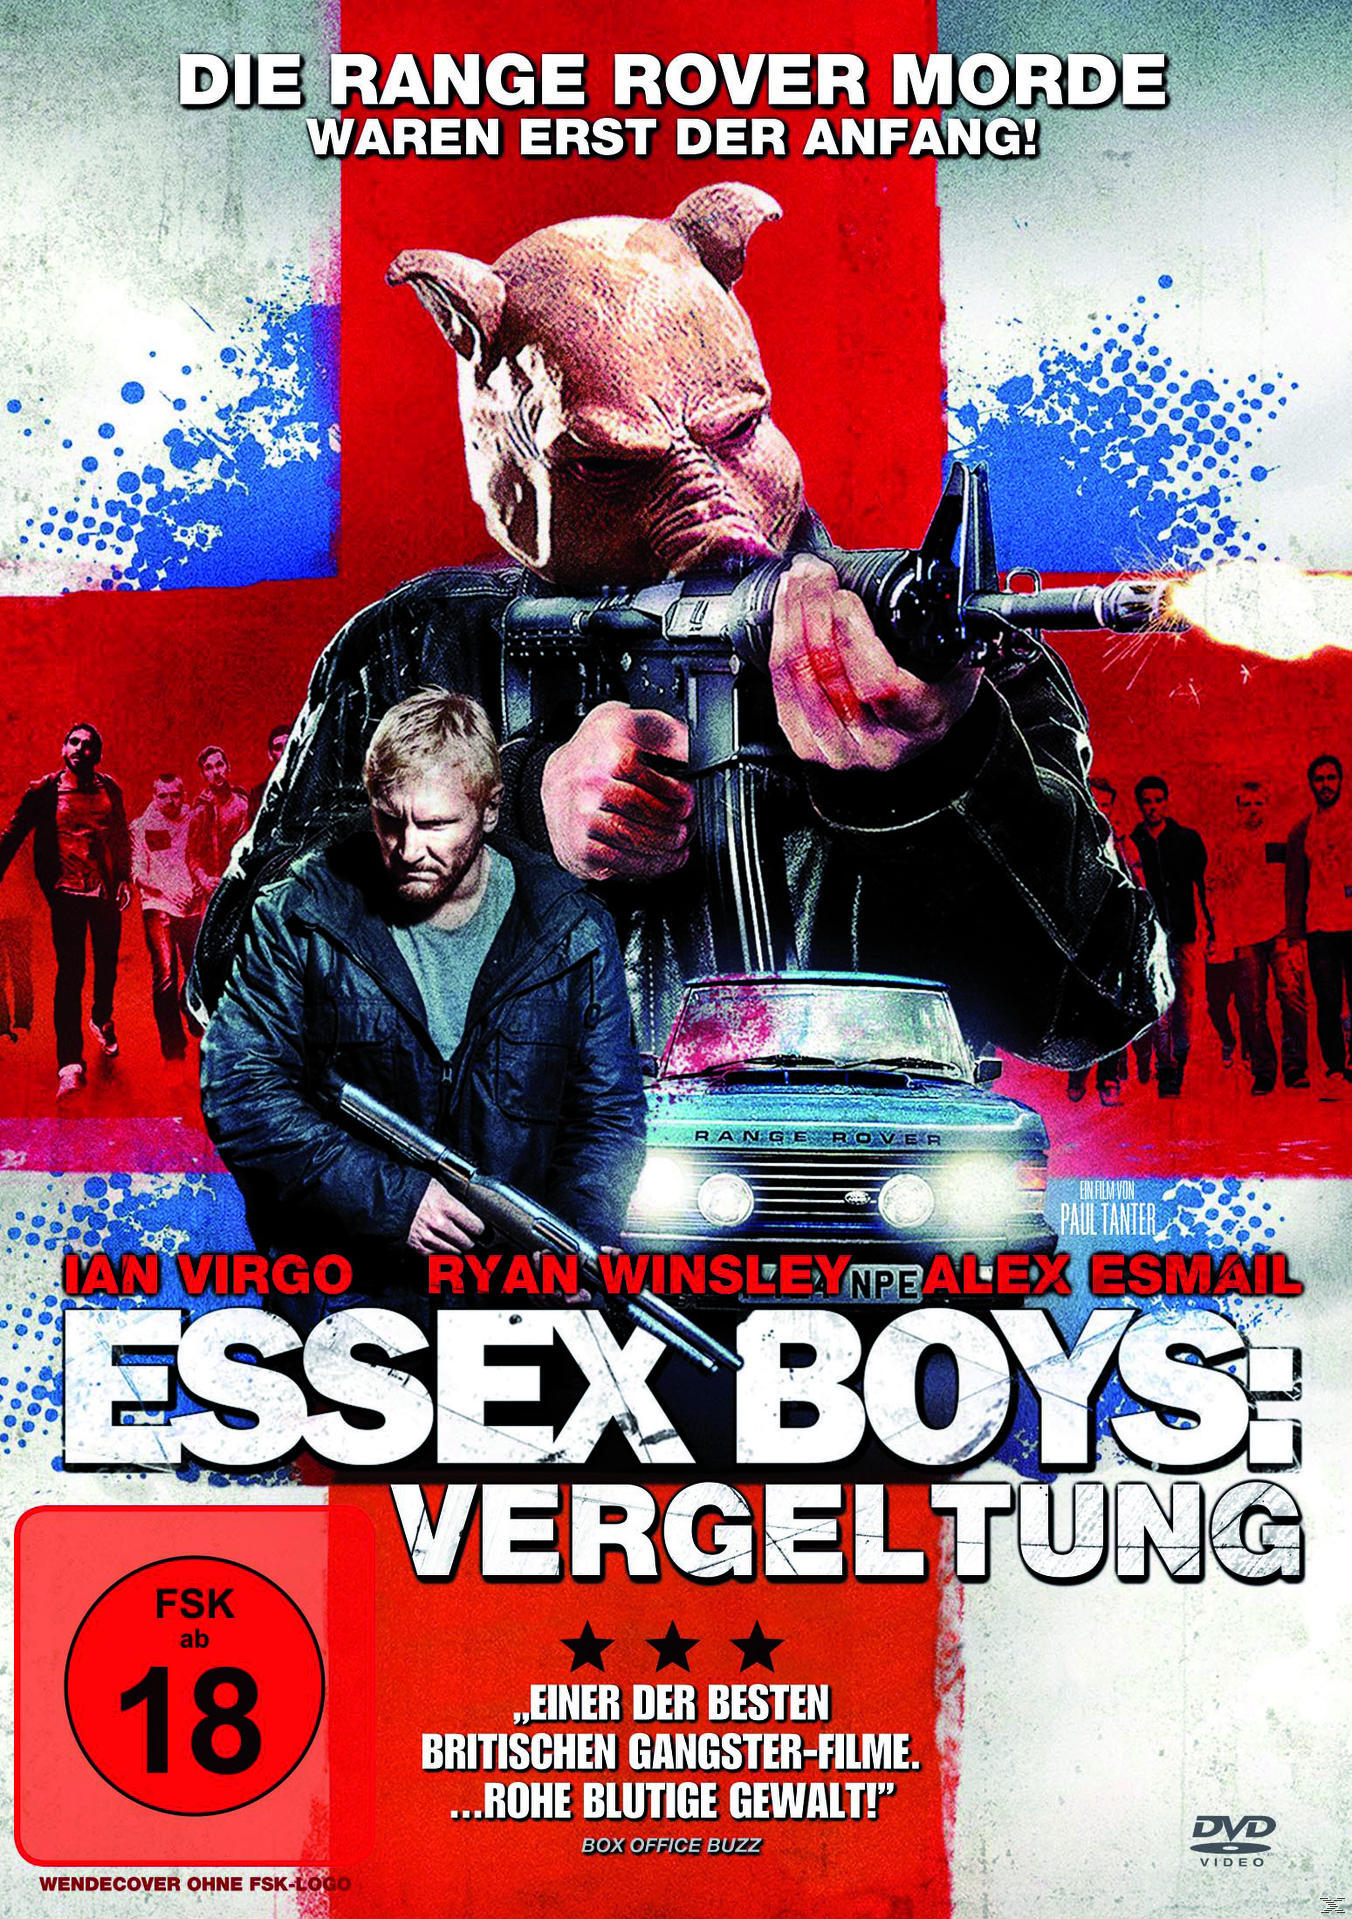 Essex Vergeltung Boys: DVD